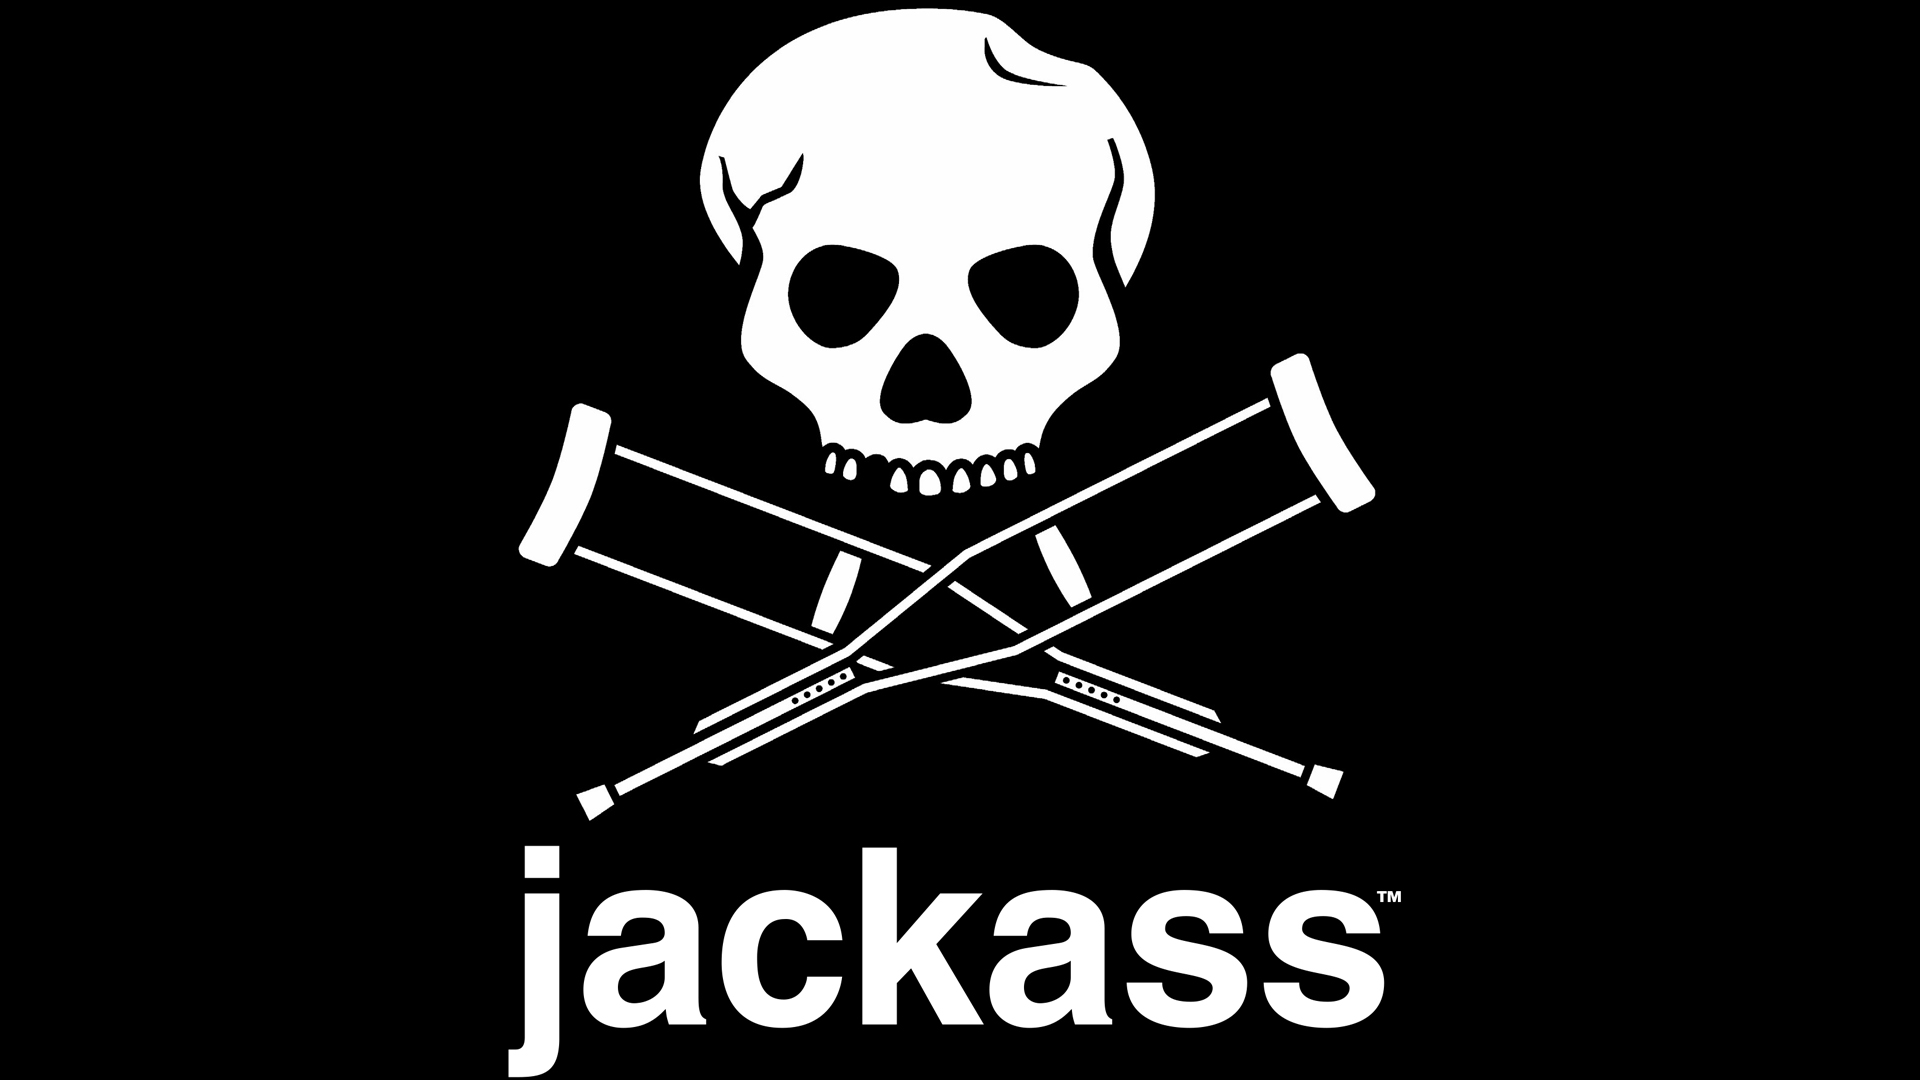 Jackass